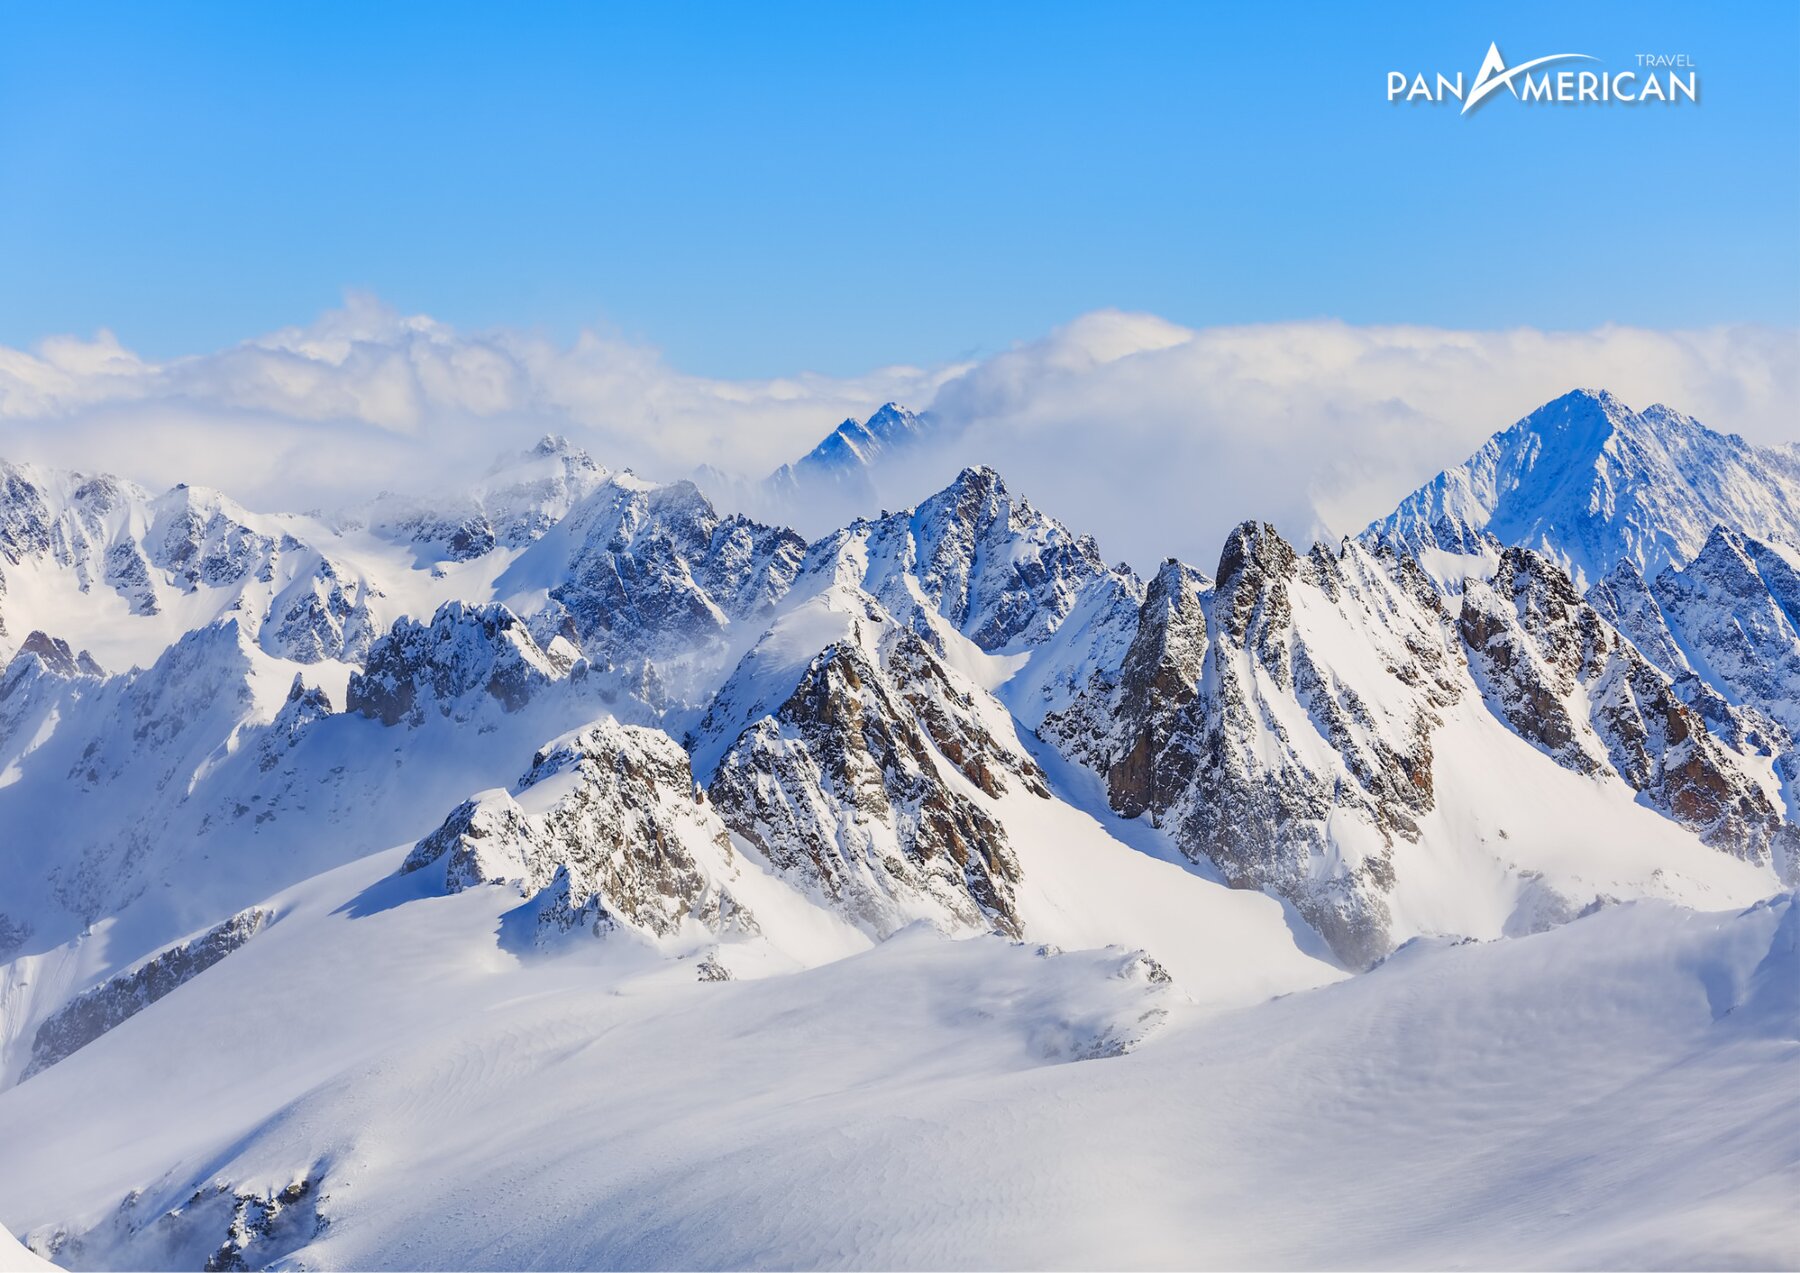 Thời điểm đẹp nhất để chinh phục núi tuyết Titlis là vào mùa đông